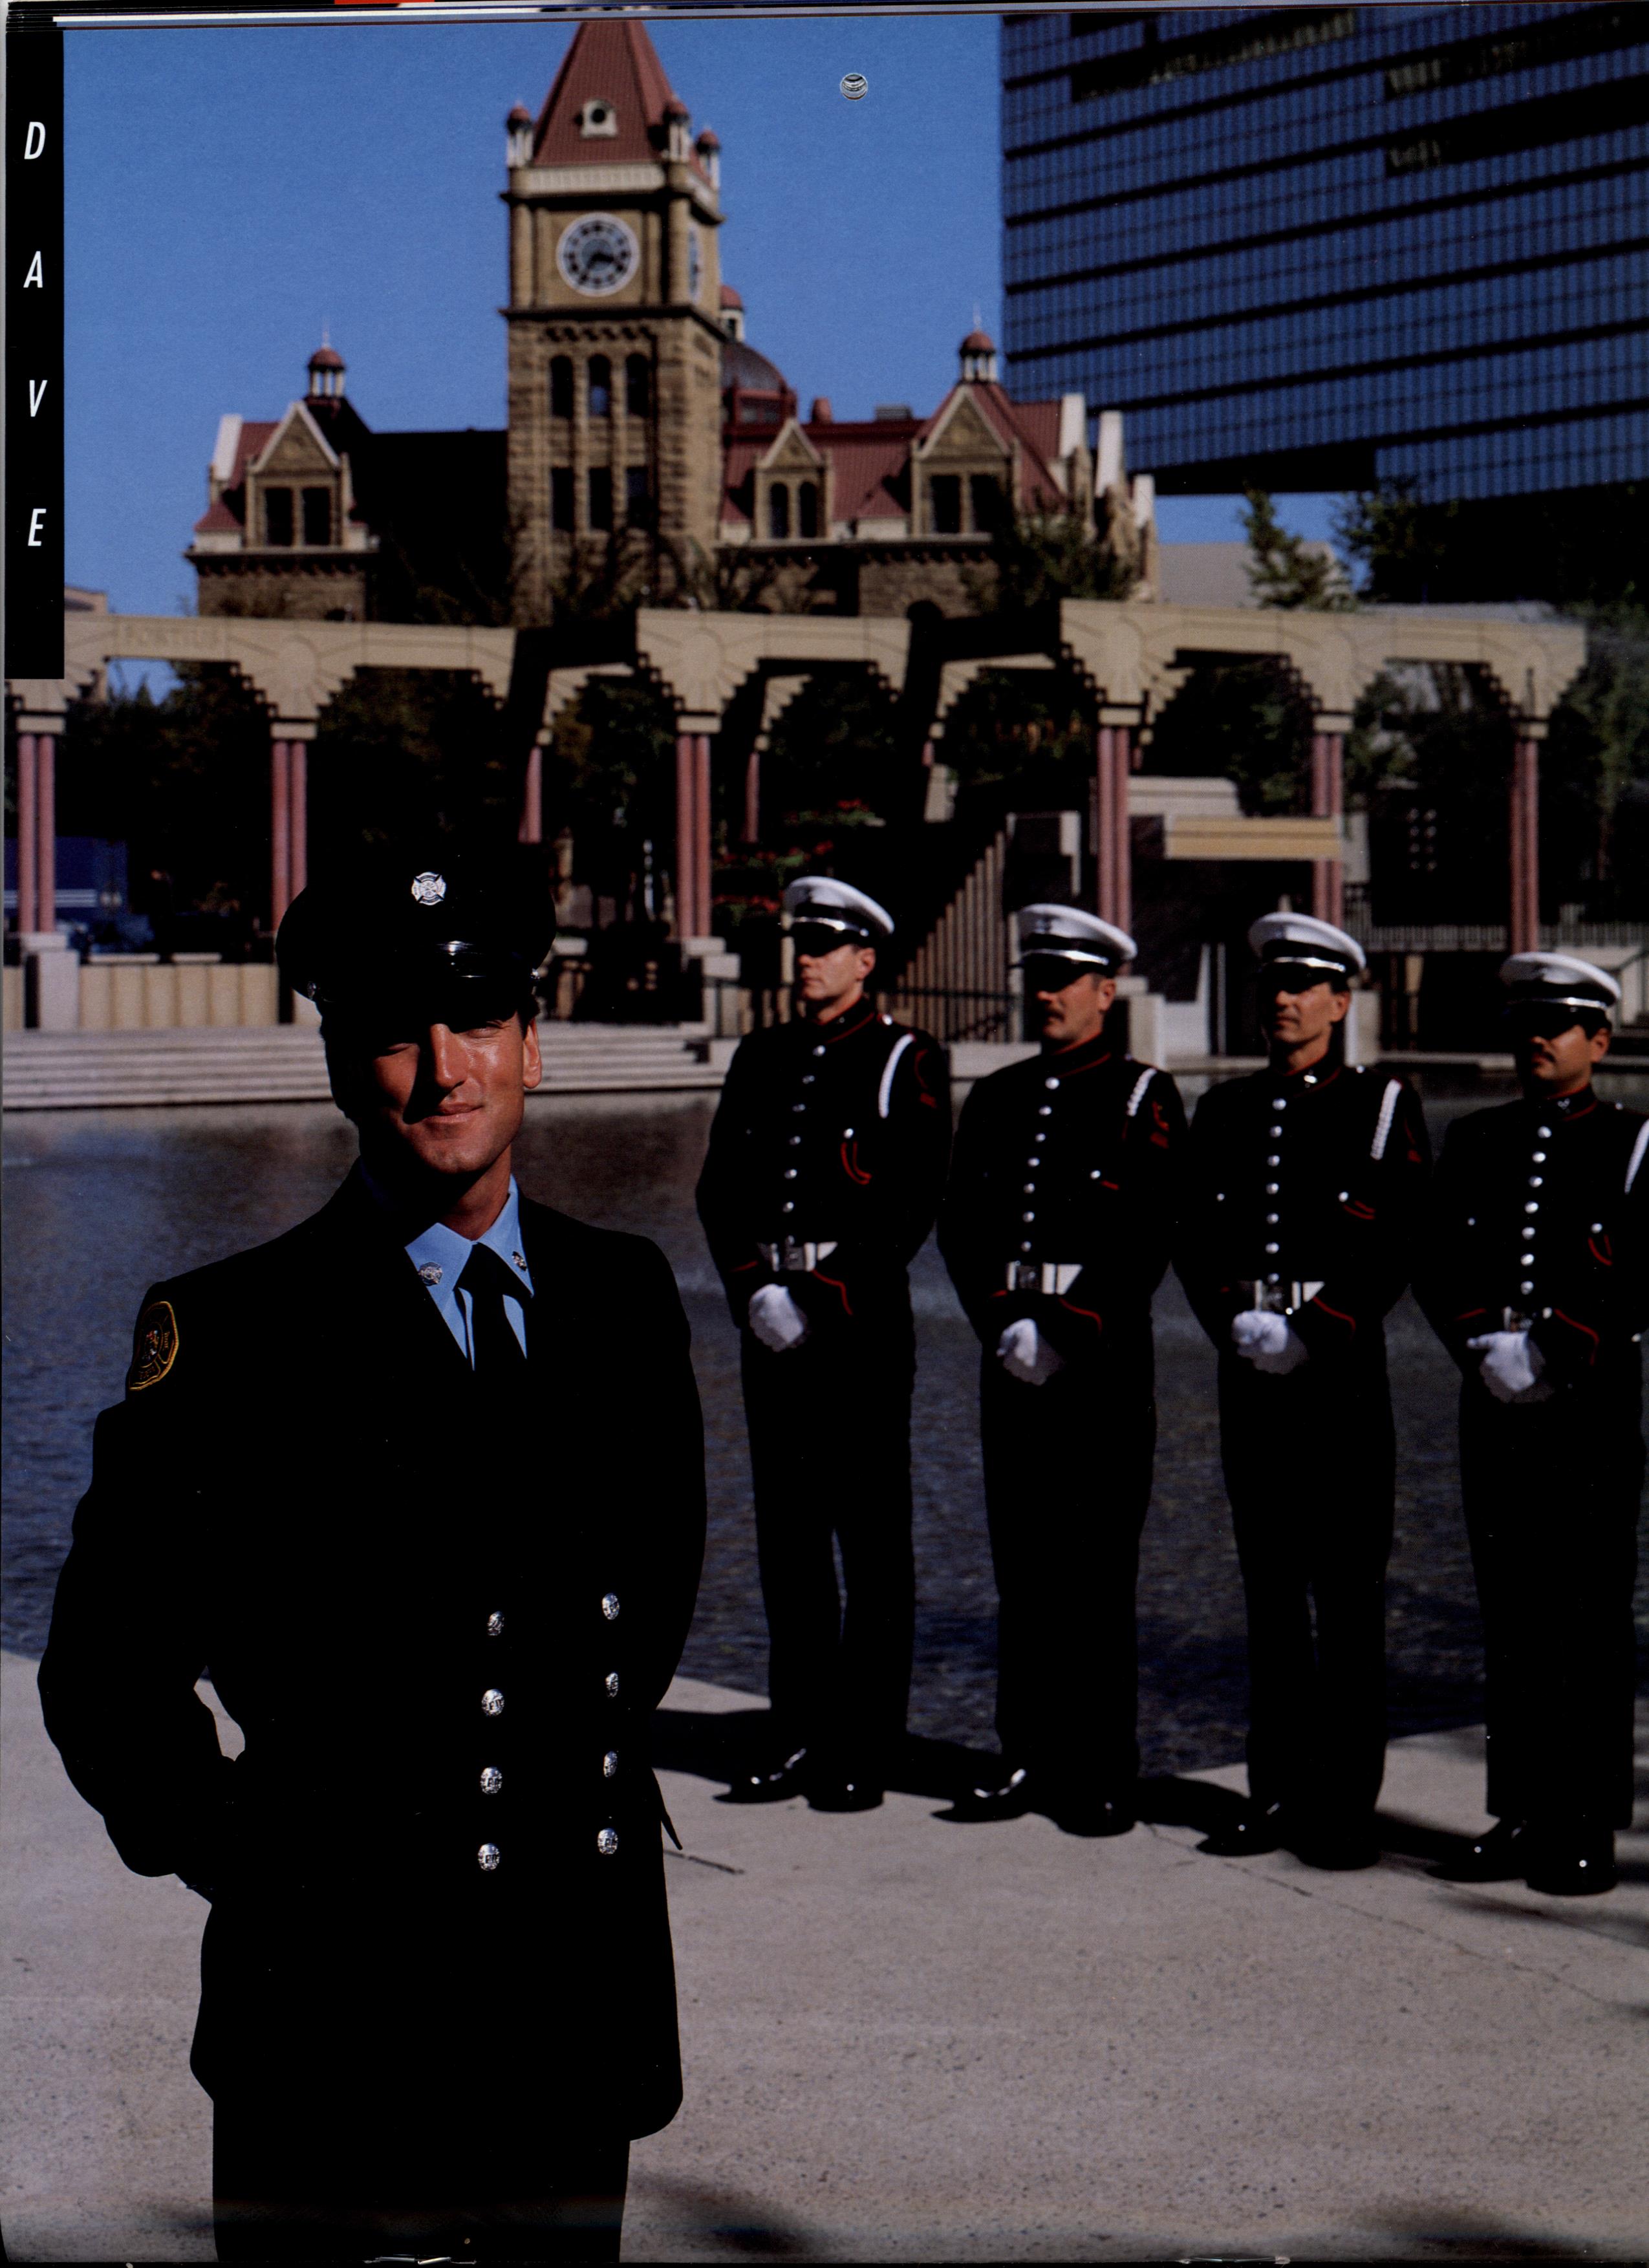 Un pompier debout à gauche, en avant-plan, et quatre membres de la garde d’honneur se tiennent au garde-à-vous un peu plus loin. En arrière-plan, on aperçoit la place olympique et l’hôtel de ville historique en grès.